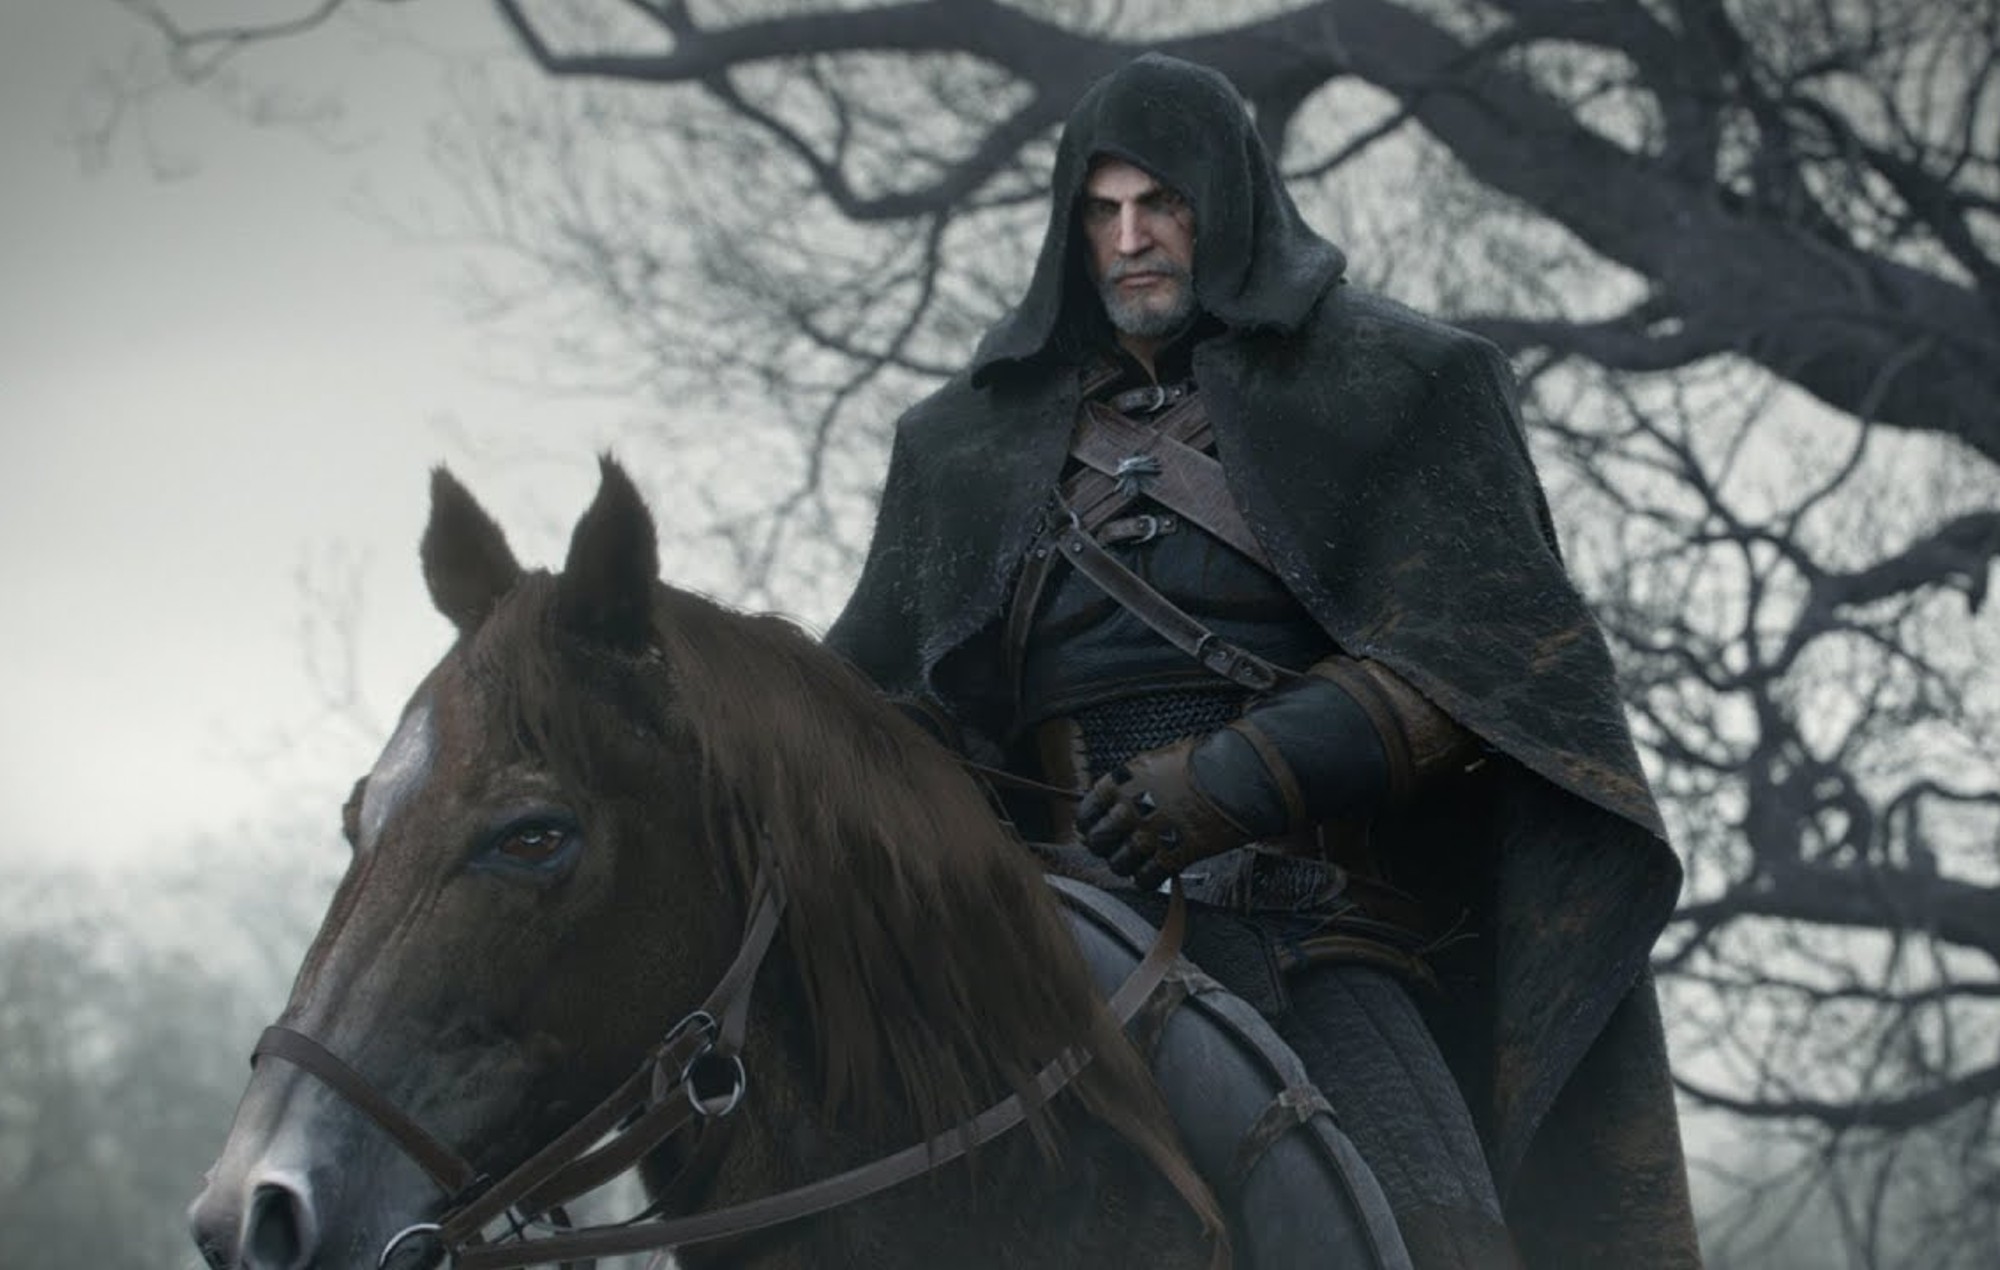 Ein Screenshot aus dem Kinotrailer zu The Witcher 3: Wild Hunt mit Geralt von Rivia zu Pferd